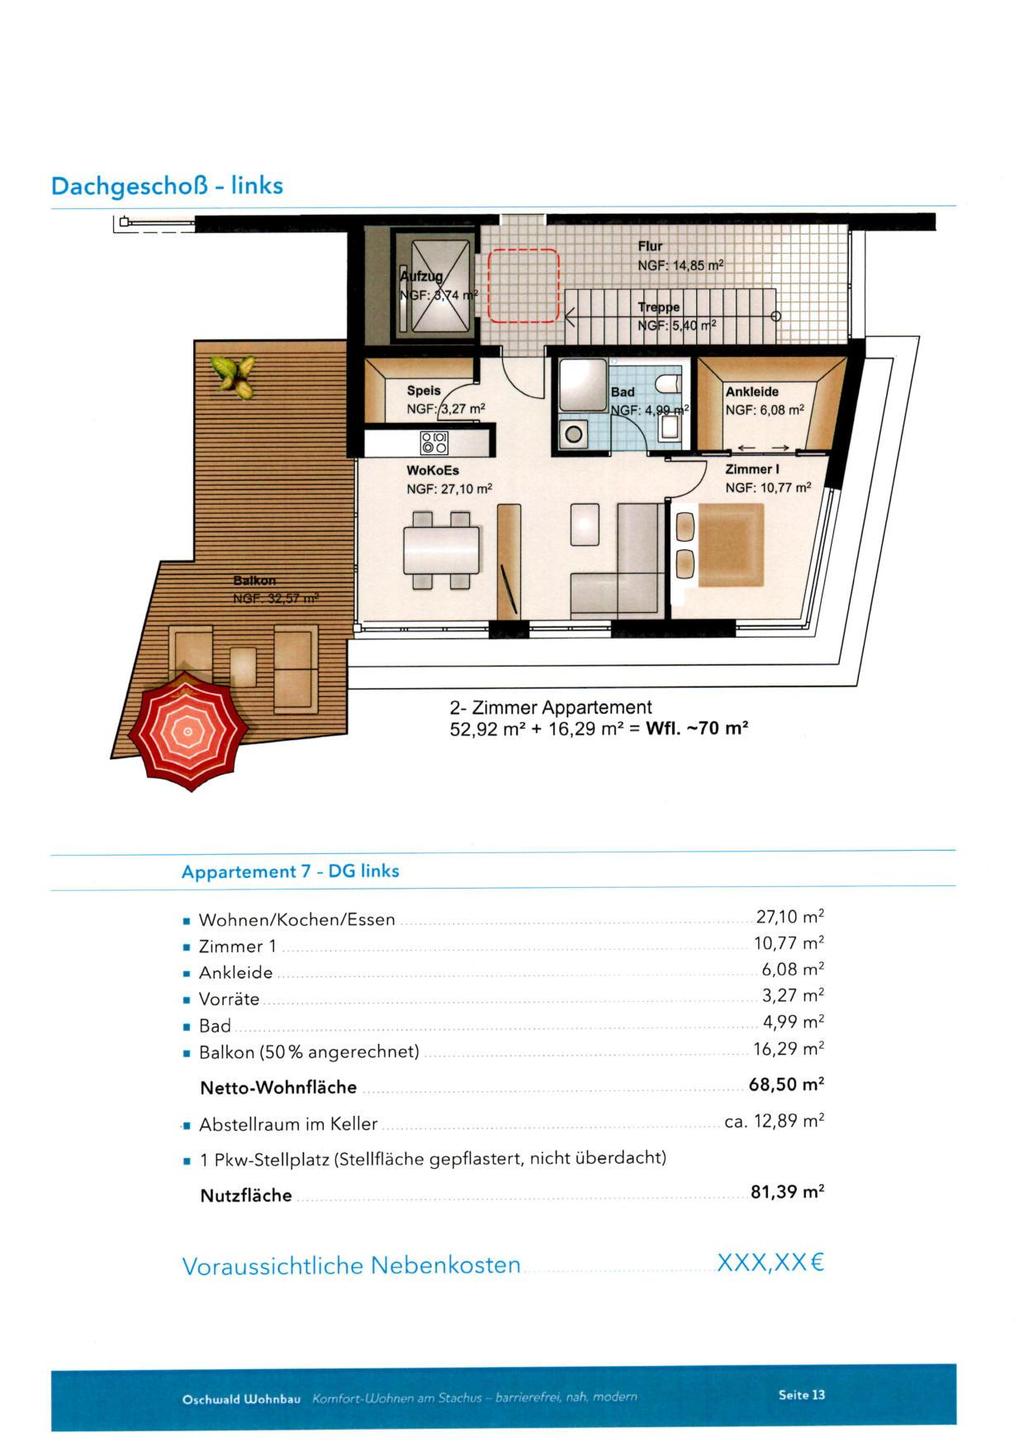 Dachgeschoß links Appartement 7 DG links Wohnen/Kochen/Essen...,10 m2 Zimmer 1... 10,77 m2 Ankleide...6,08 m2 Vorräte... 3, m2 Bad... 4,99 m2 Balkon (50 % angerechnet).